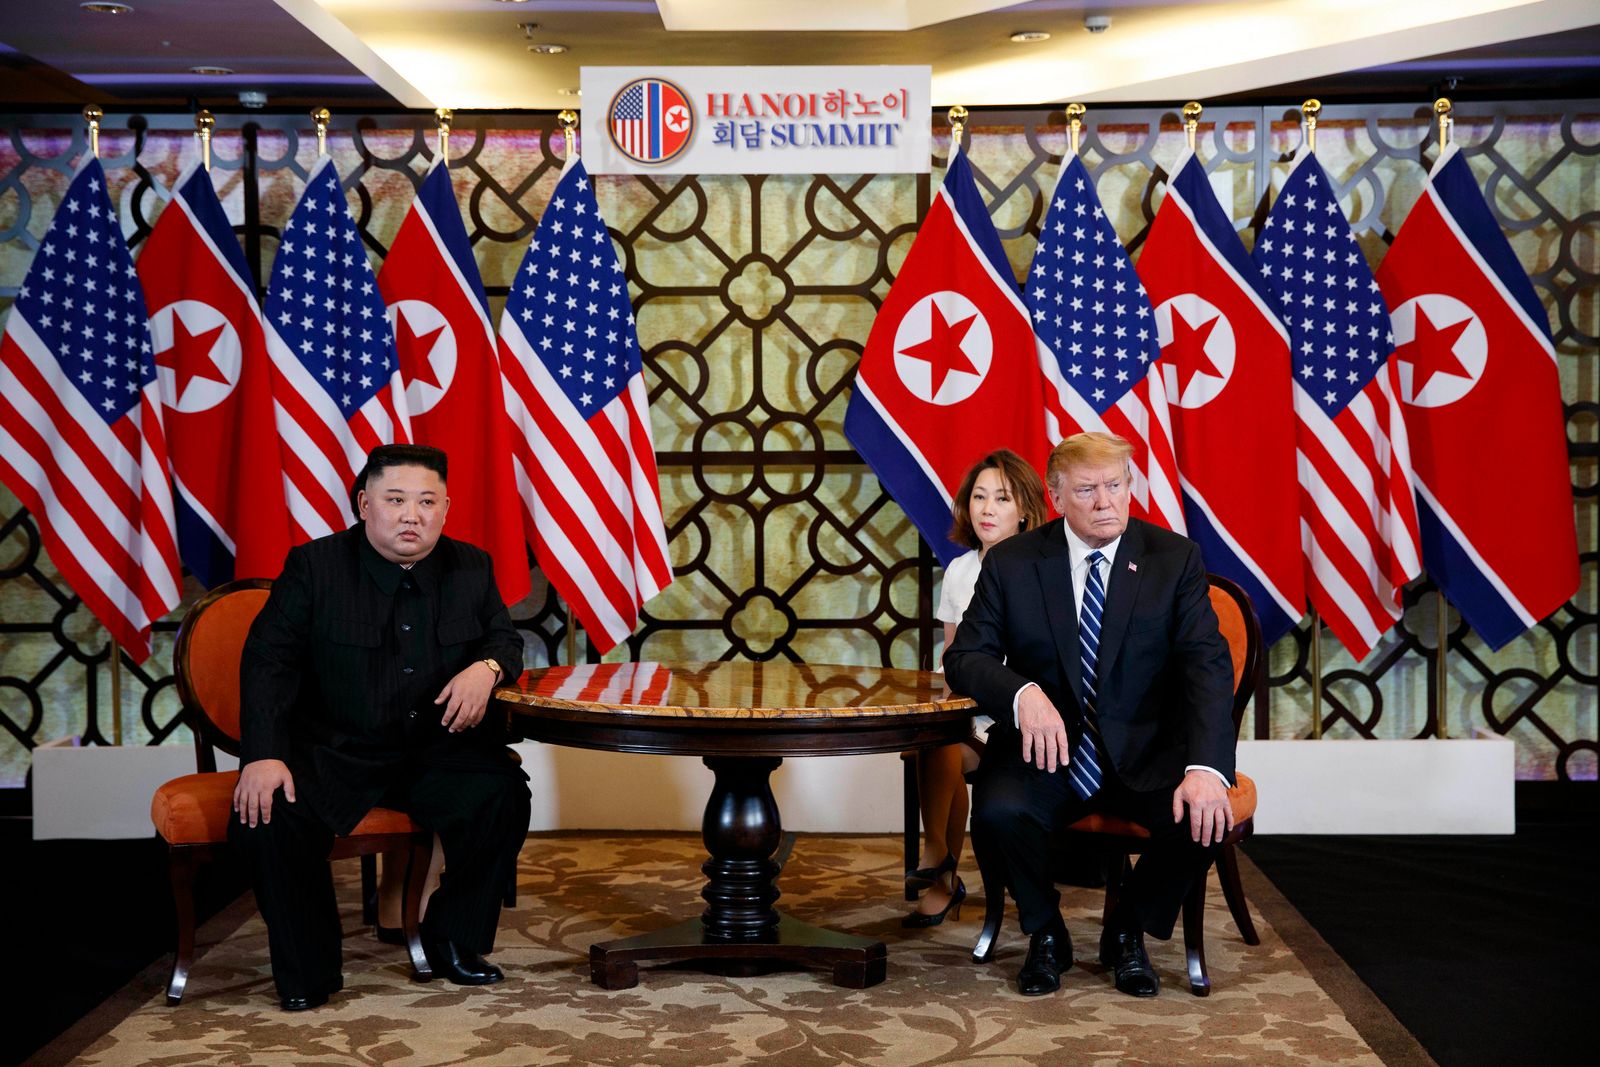 الرئيس الأميركي السابق دونالد ترمب والزعيم الكوري الشمالي كيم جونغ أون خلال لقائهما في هانوي - 28 فبراير 2019 - AP